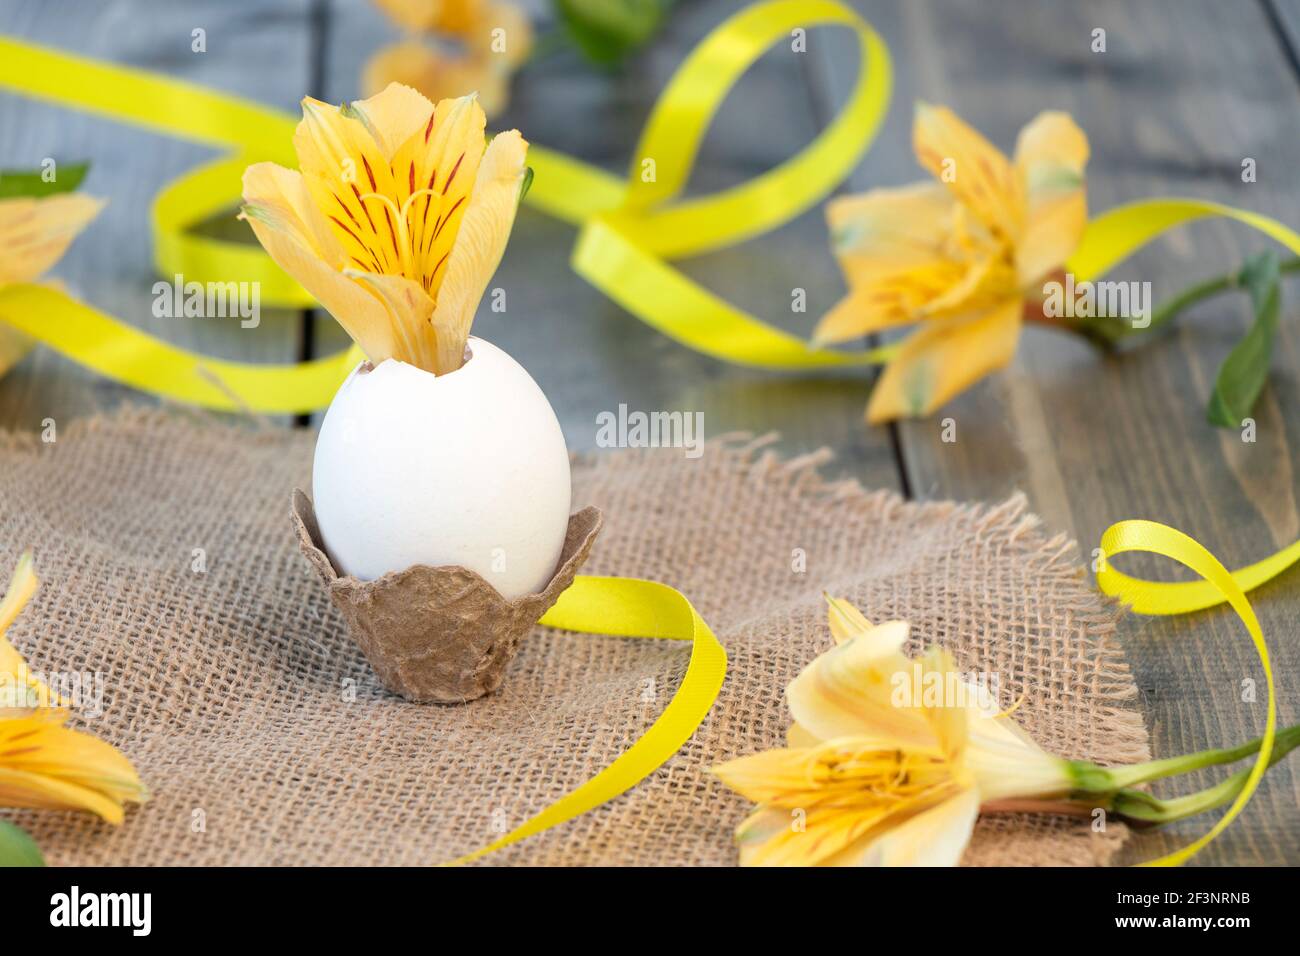 Fiore di alstroemeria giallo in un uovo su fondo di legno con fiori gialli e nastro giallo. Buon concetto di Pasqua. Messa a fuoco morbida Foto Stock